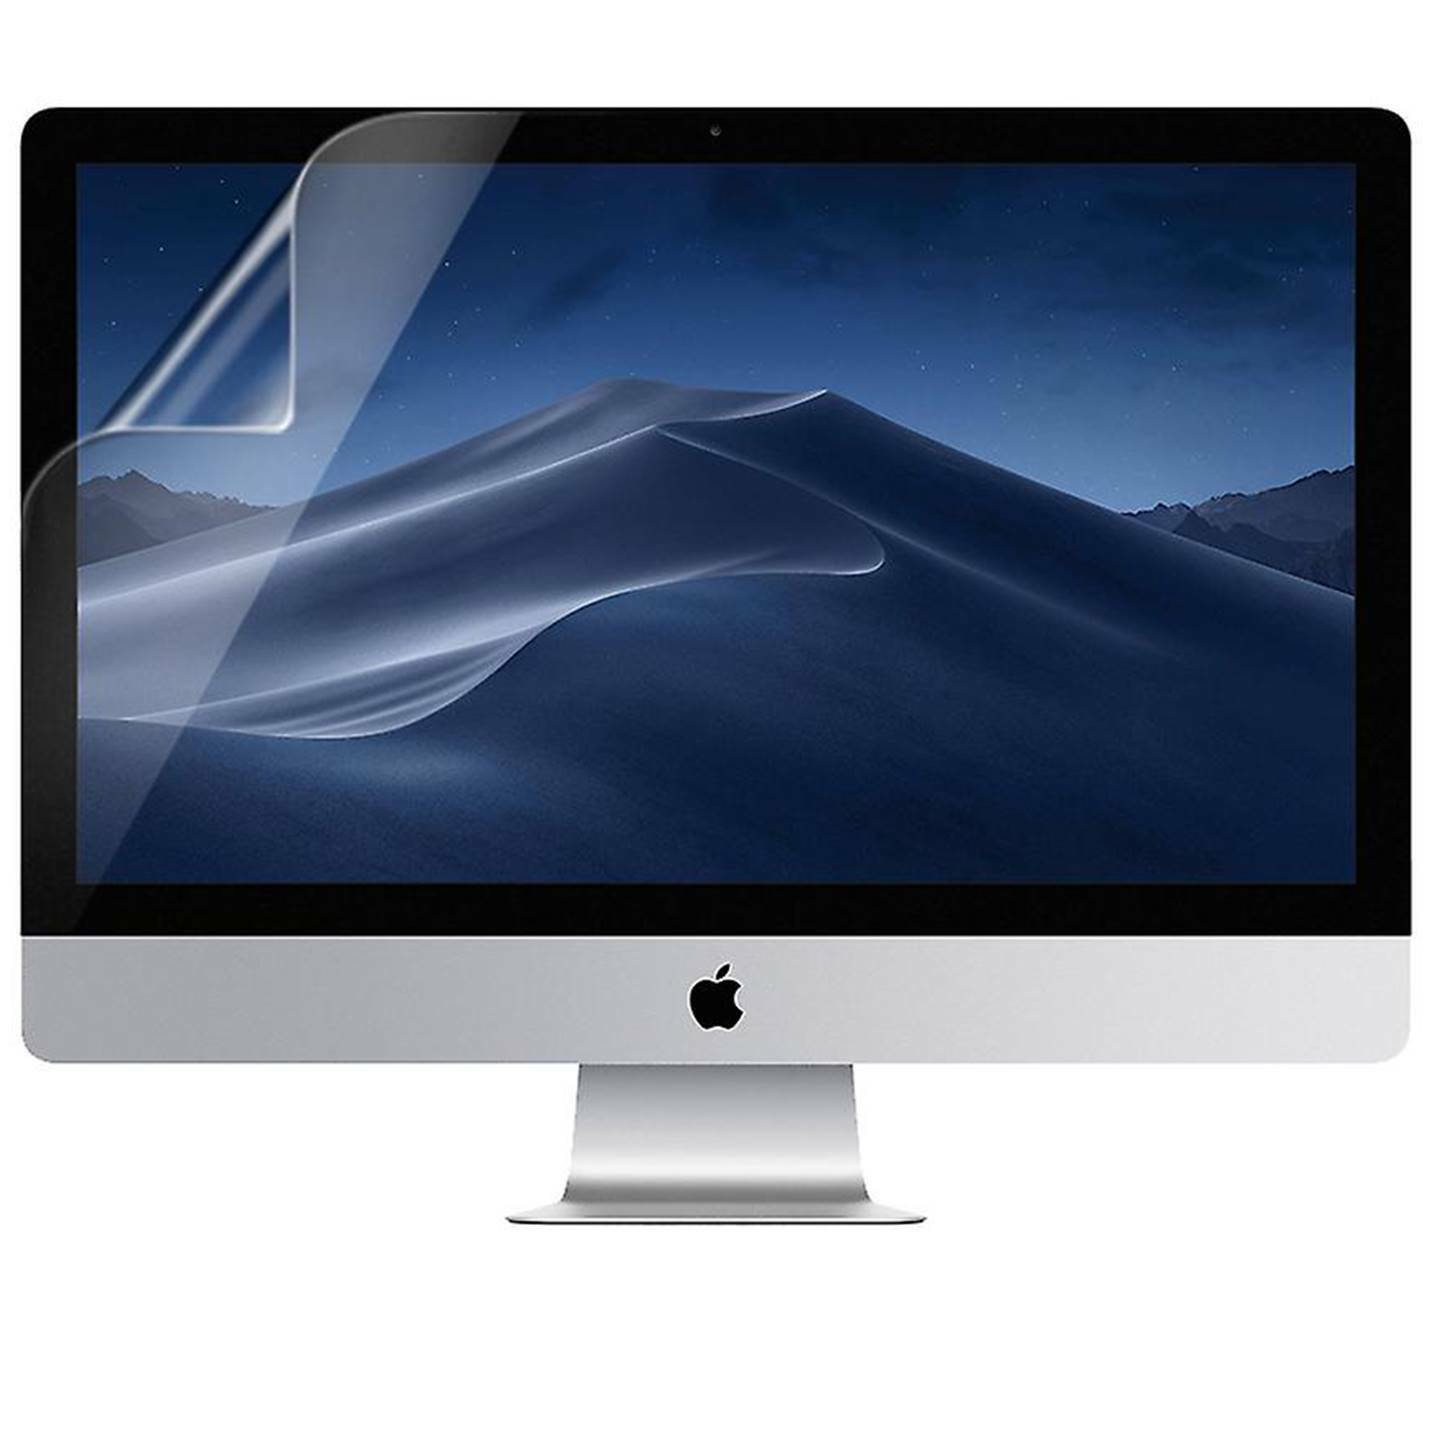 Matte Anti Glare Screen Protector Guard Shield Cover For iMac 21.5 / 24 / 27 in